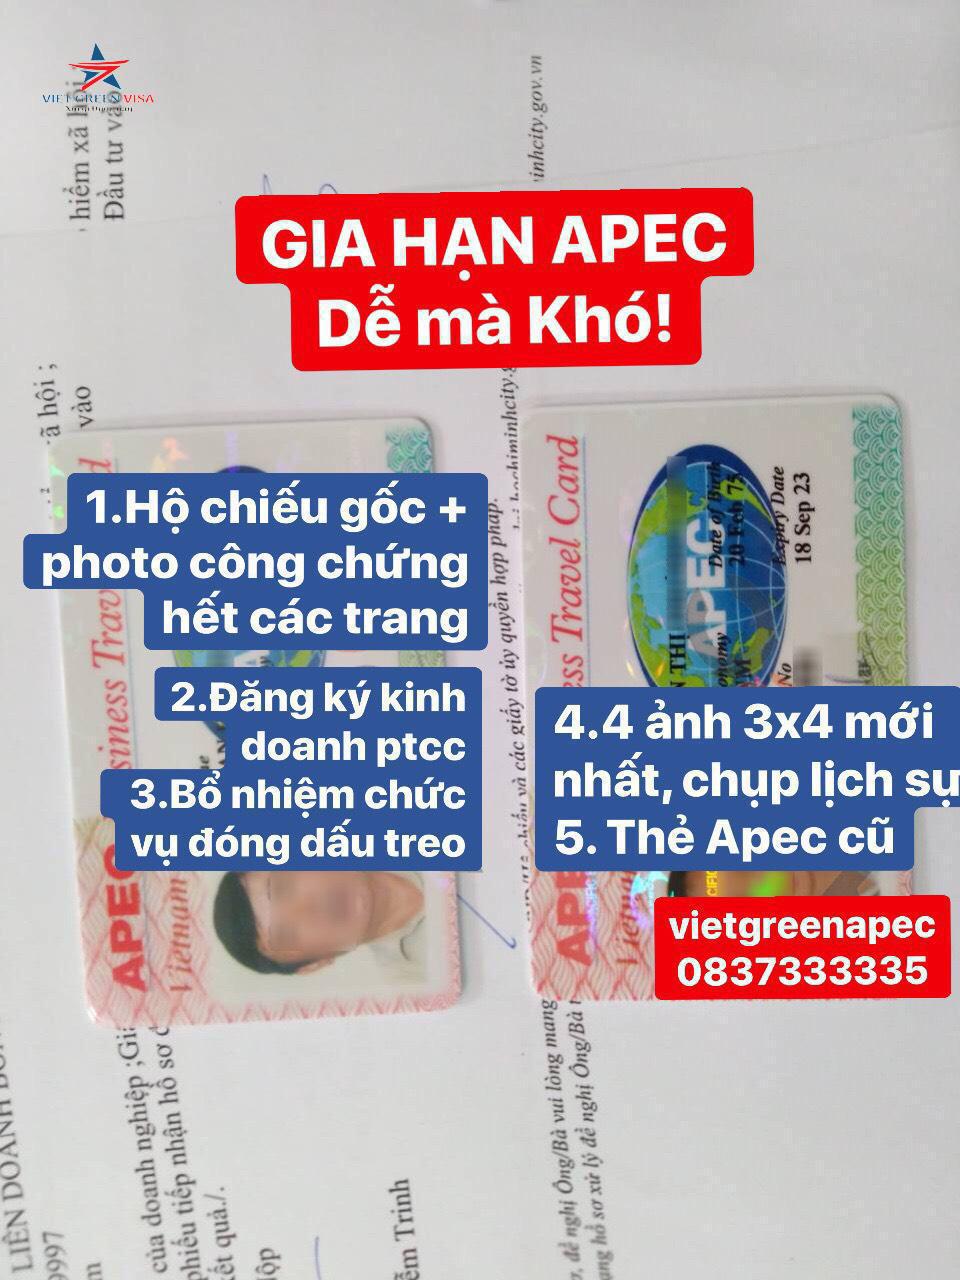 Dịch vụ làm thẻ apec tại Đà Nẵng, Tư vấn thẻ Apec